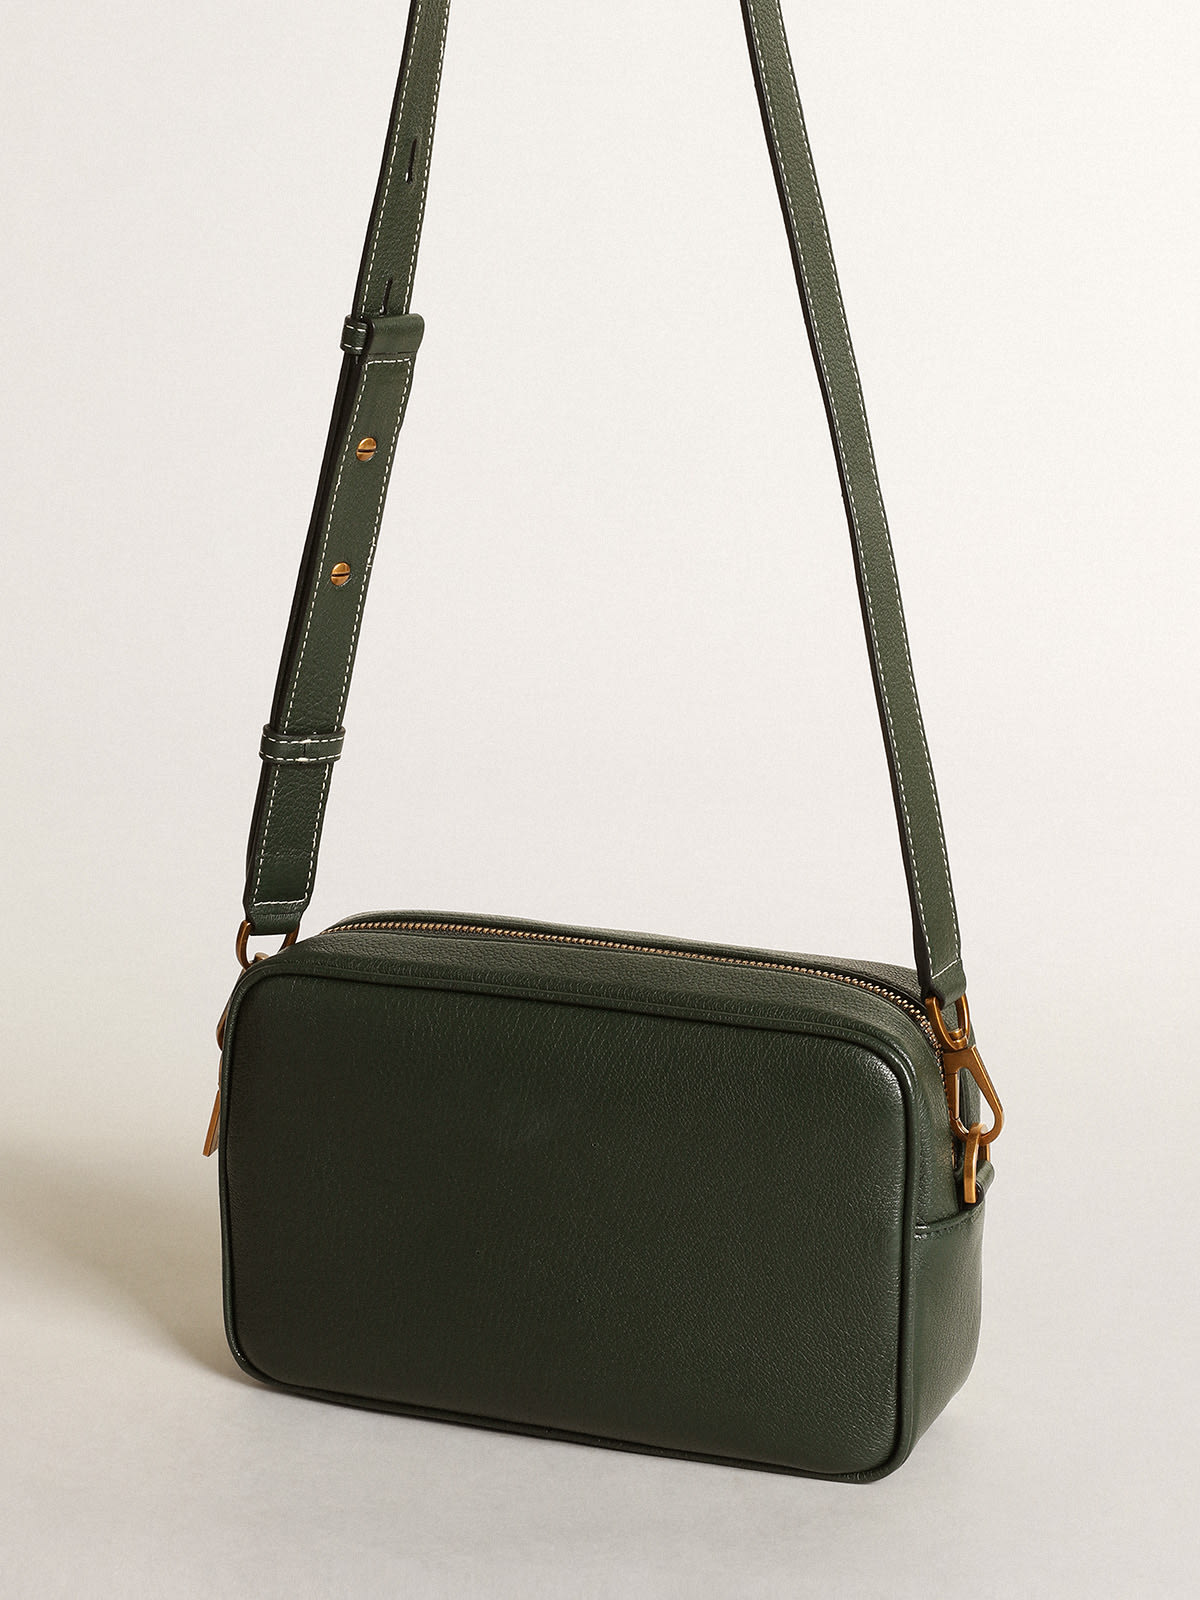 Golden Goose - Bolso Star Bag de piel color verde oscuro con estrella tono sobre tono in 